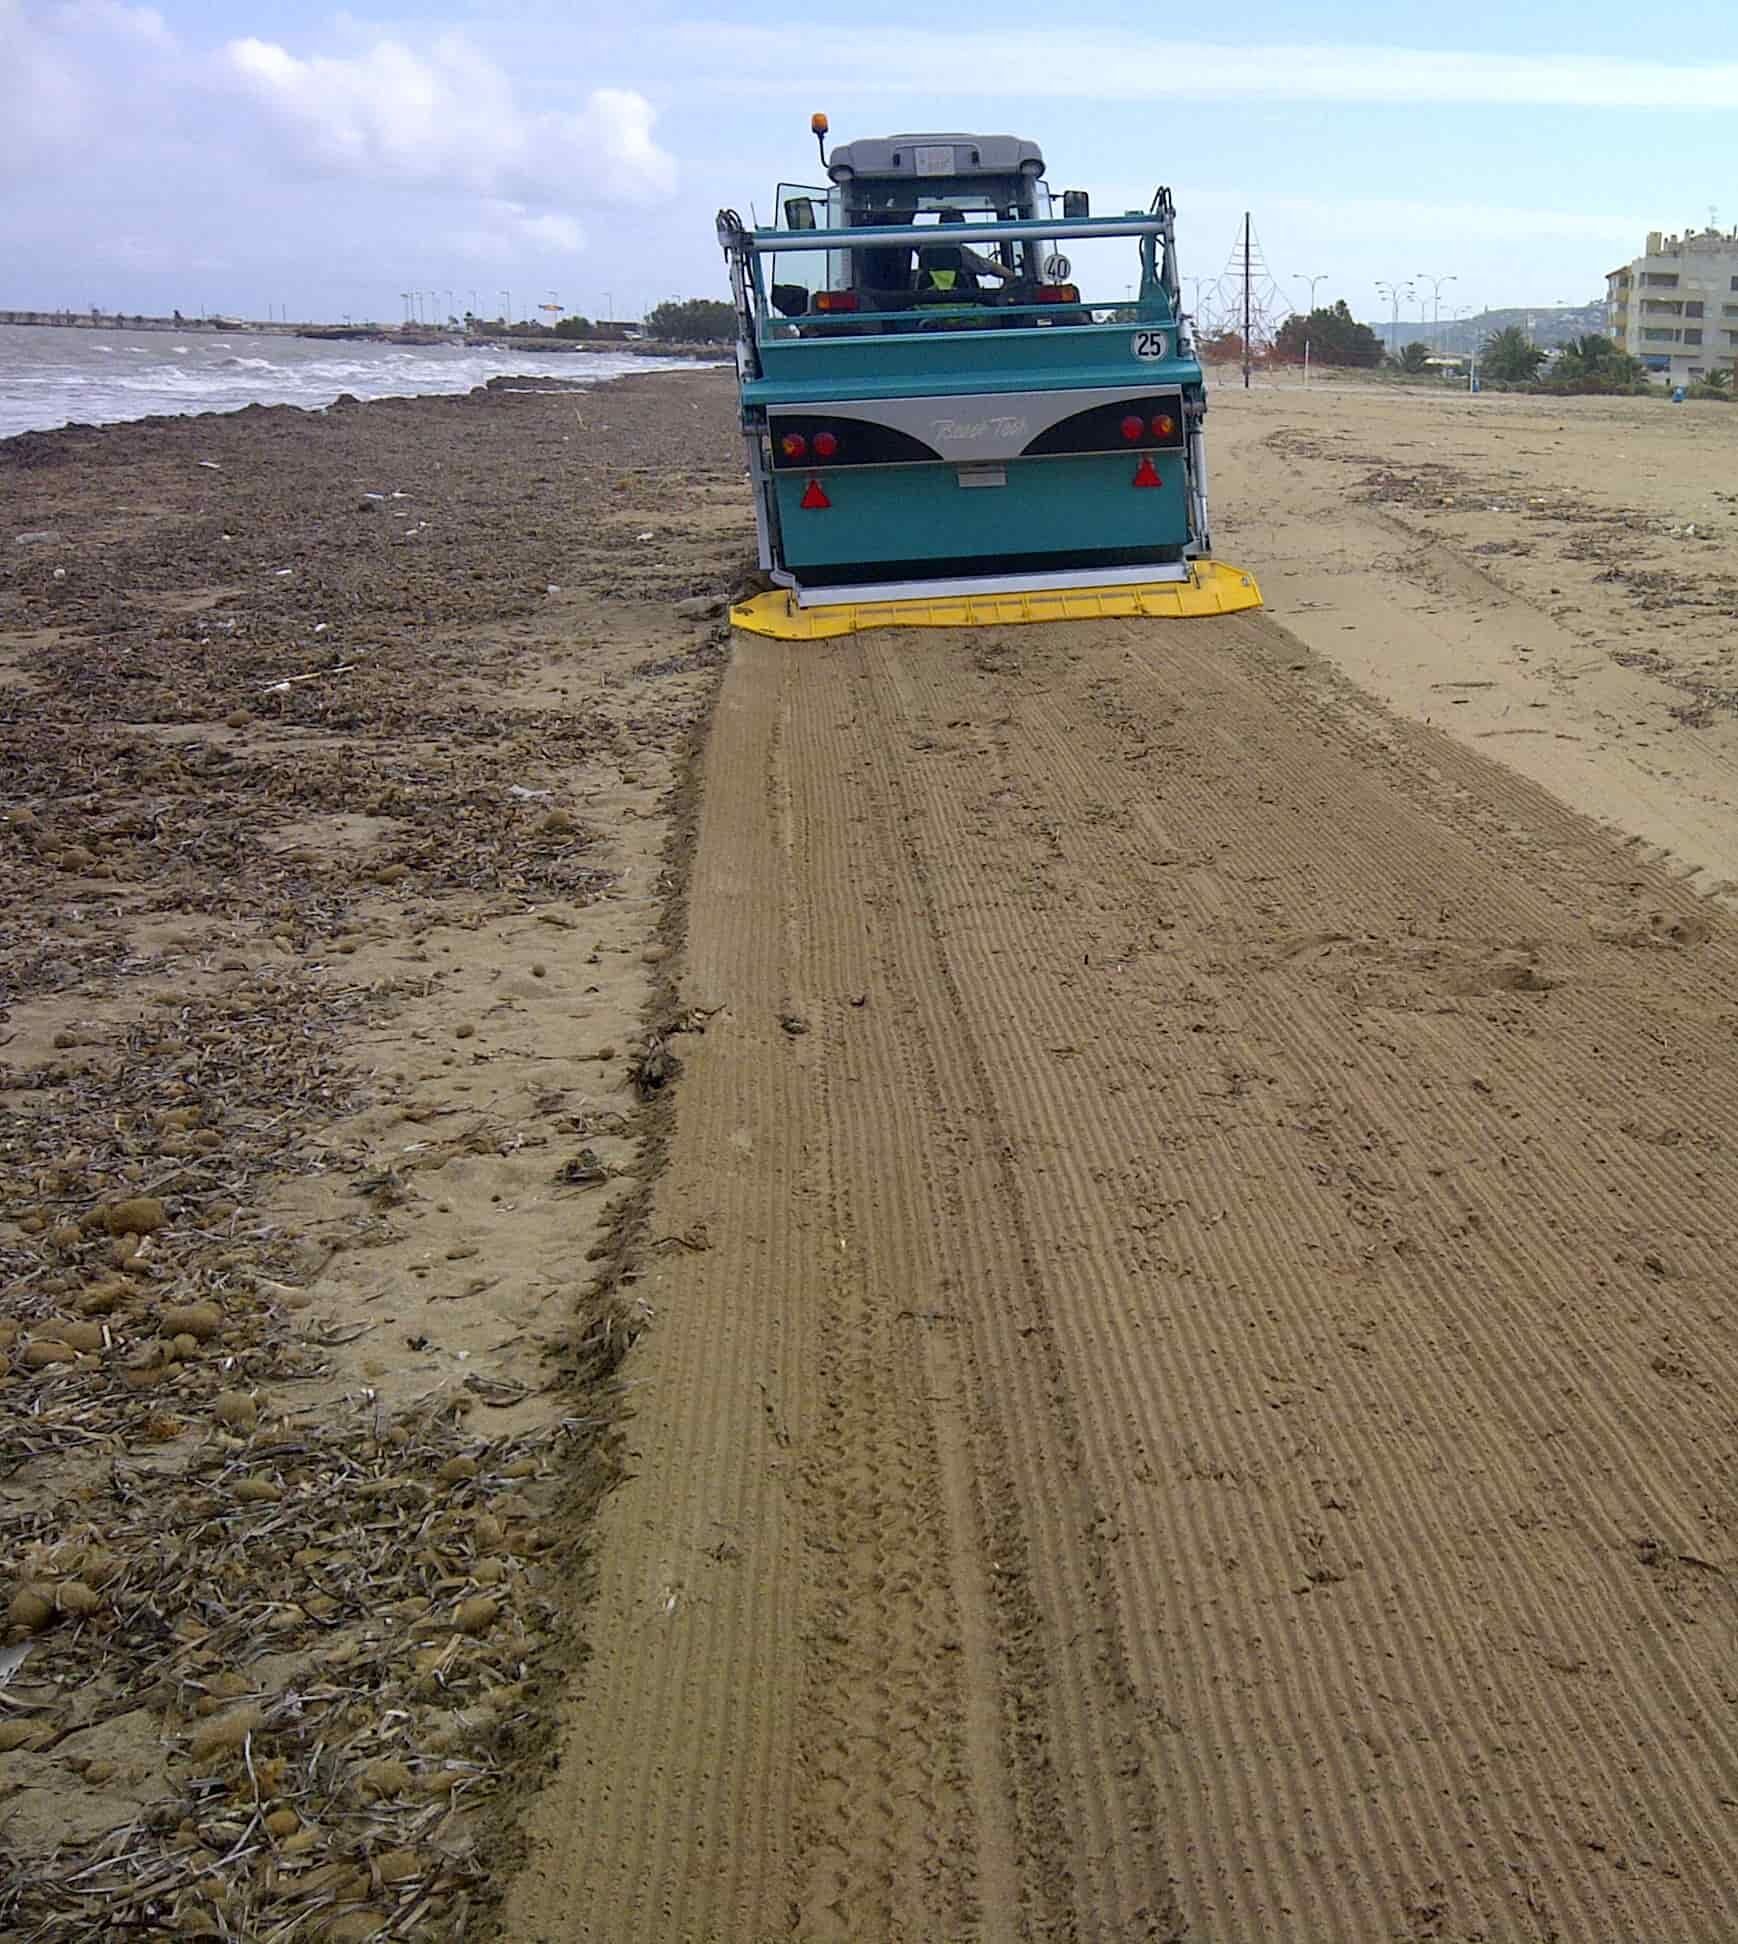 Nettoyeur de plage arraché Démonstration BeachTech Nettoyage de sable Seagrass 